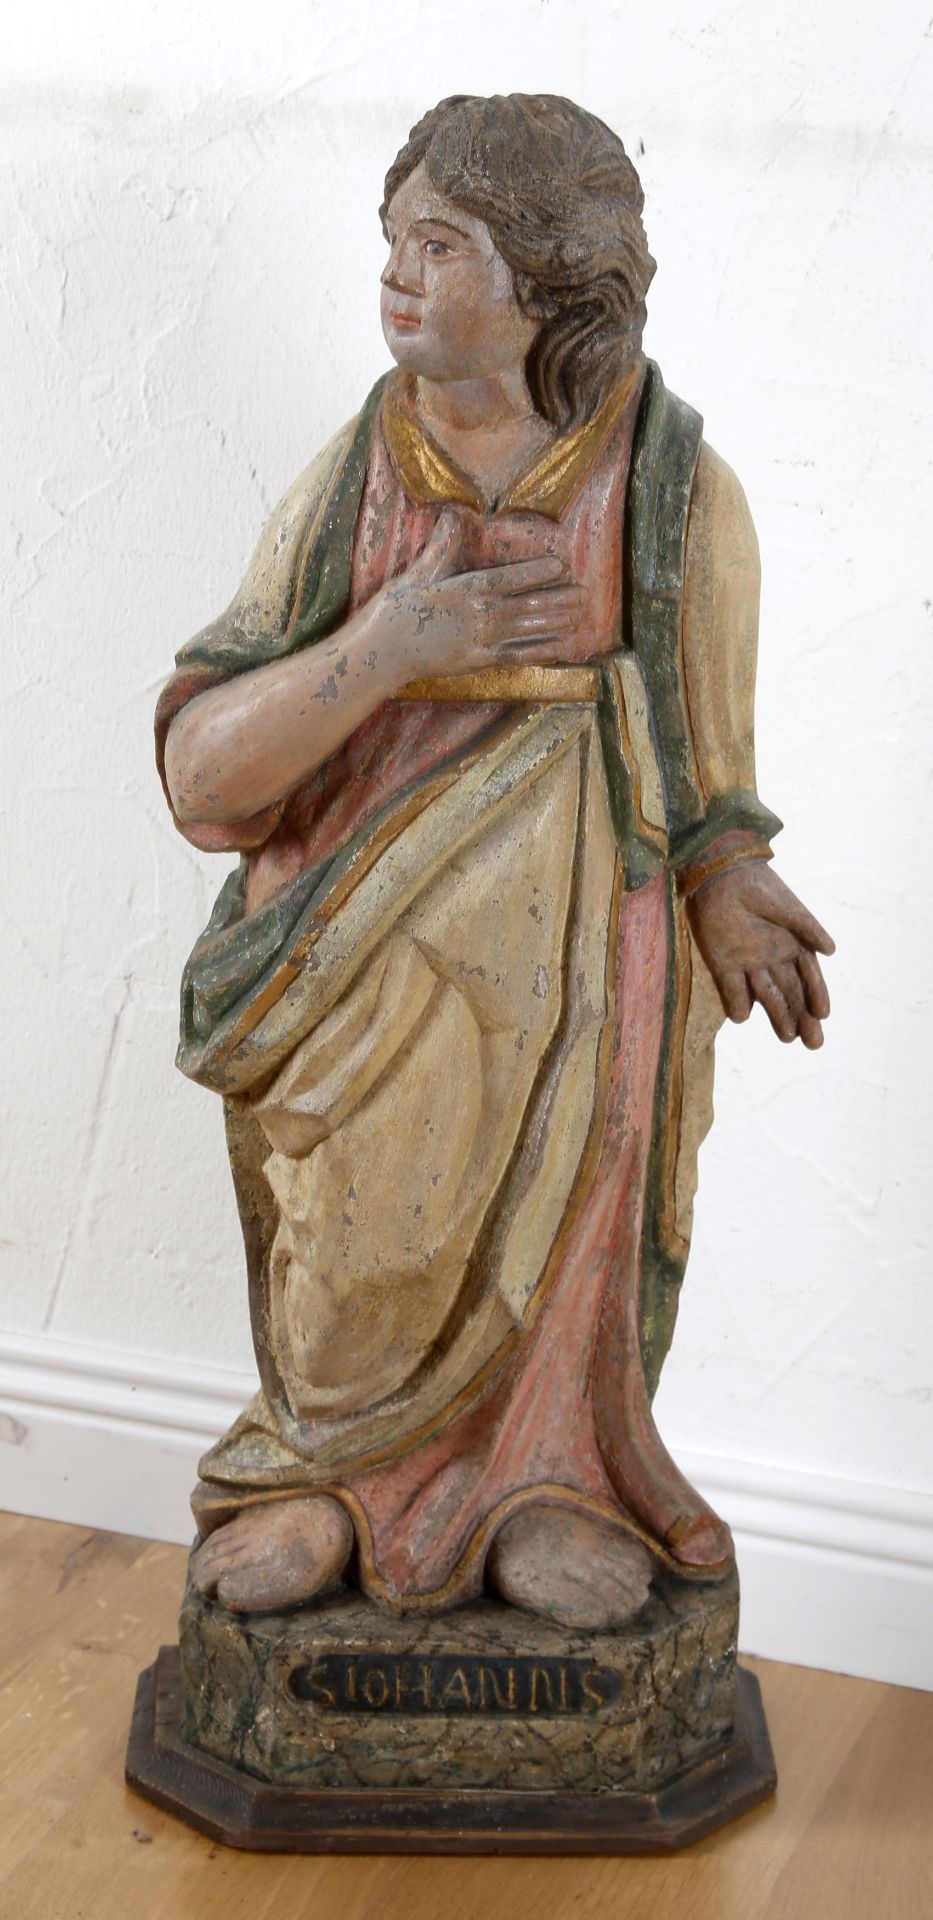 Apostel Johannes, farbig gefasste Skulptur aus grauem Sandstein, Saarland/Lothringen. 2. H. 18. Jh. - Bild 2 aus 2